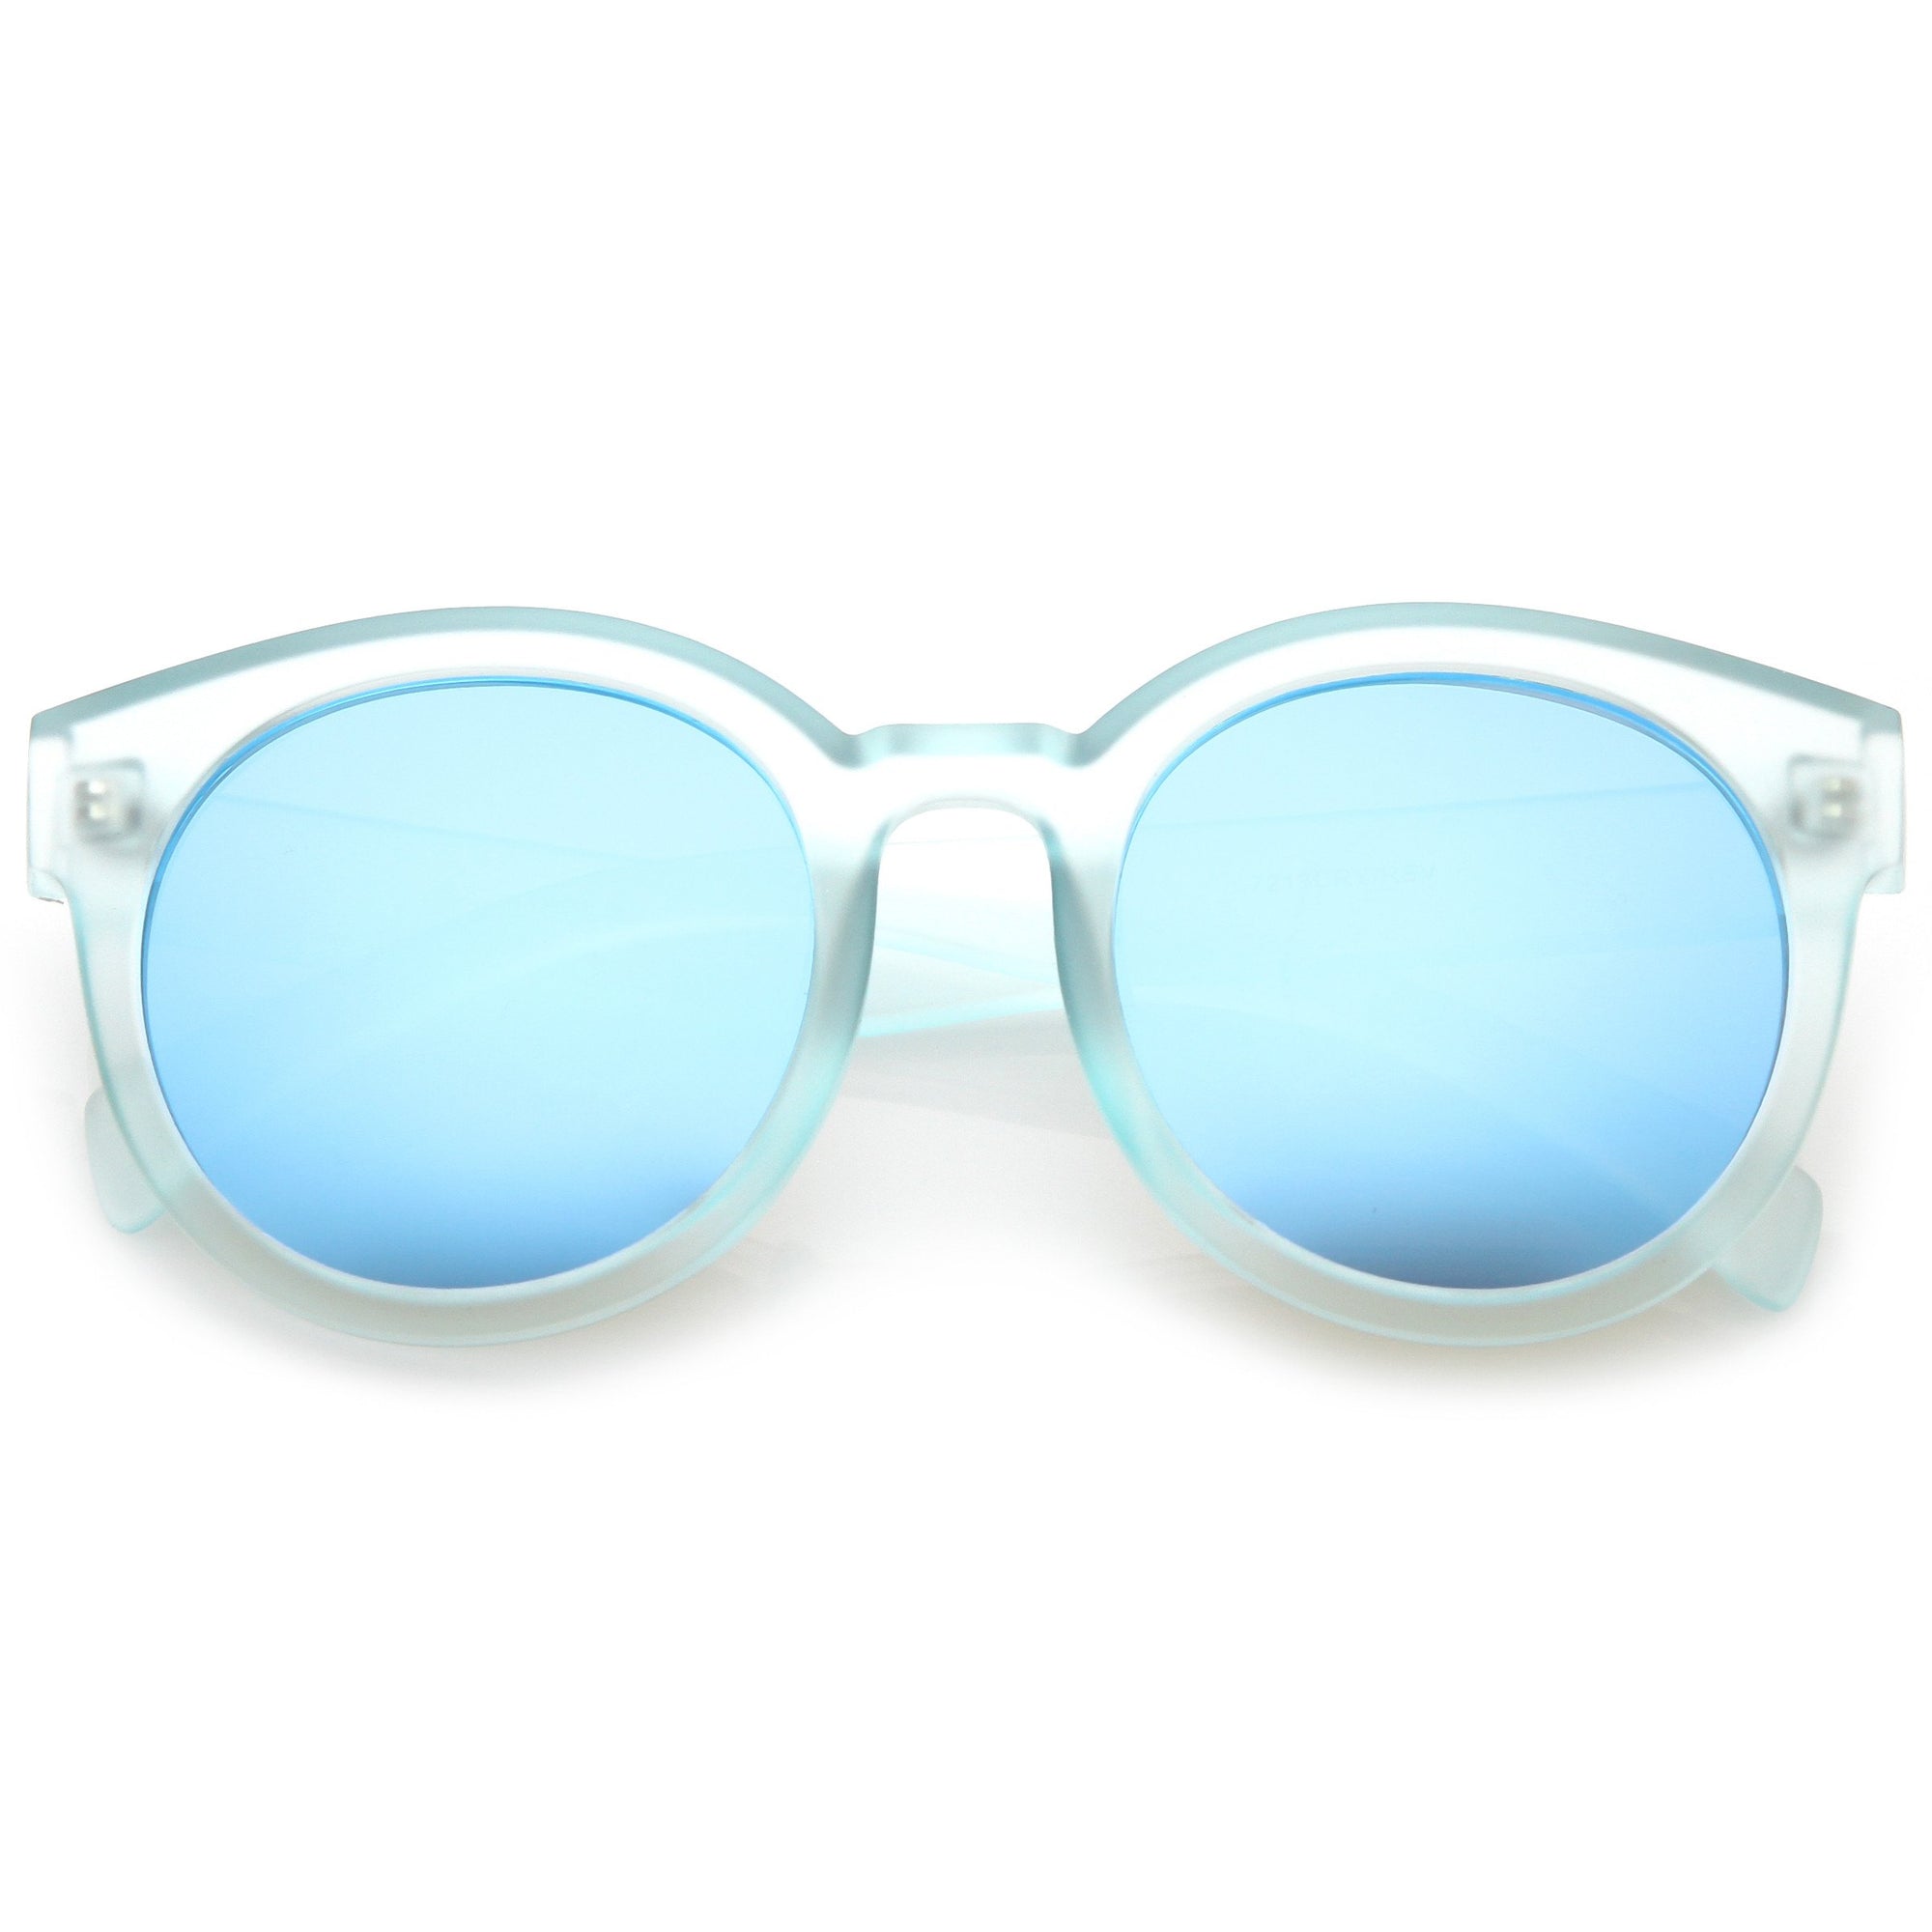 Retro Round Translucent Mirrored Lens Sunglasses - zeroUV